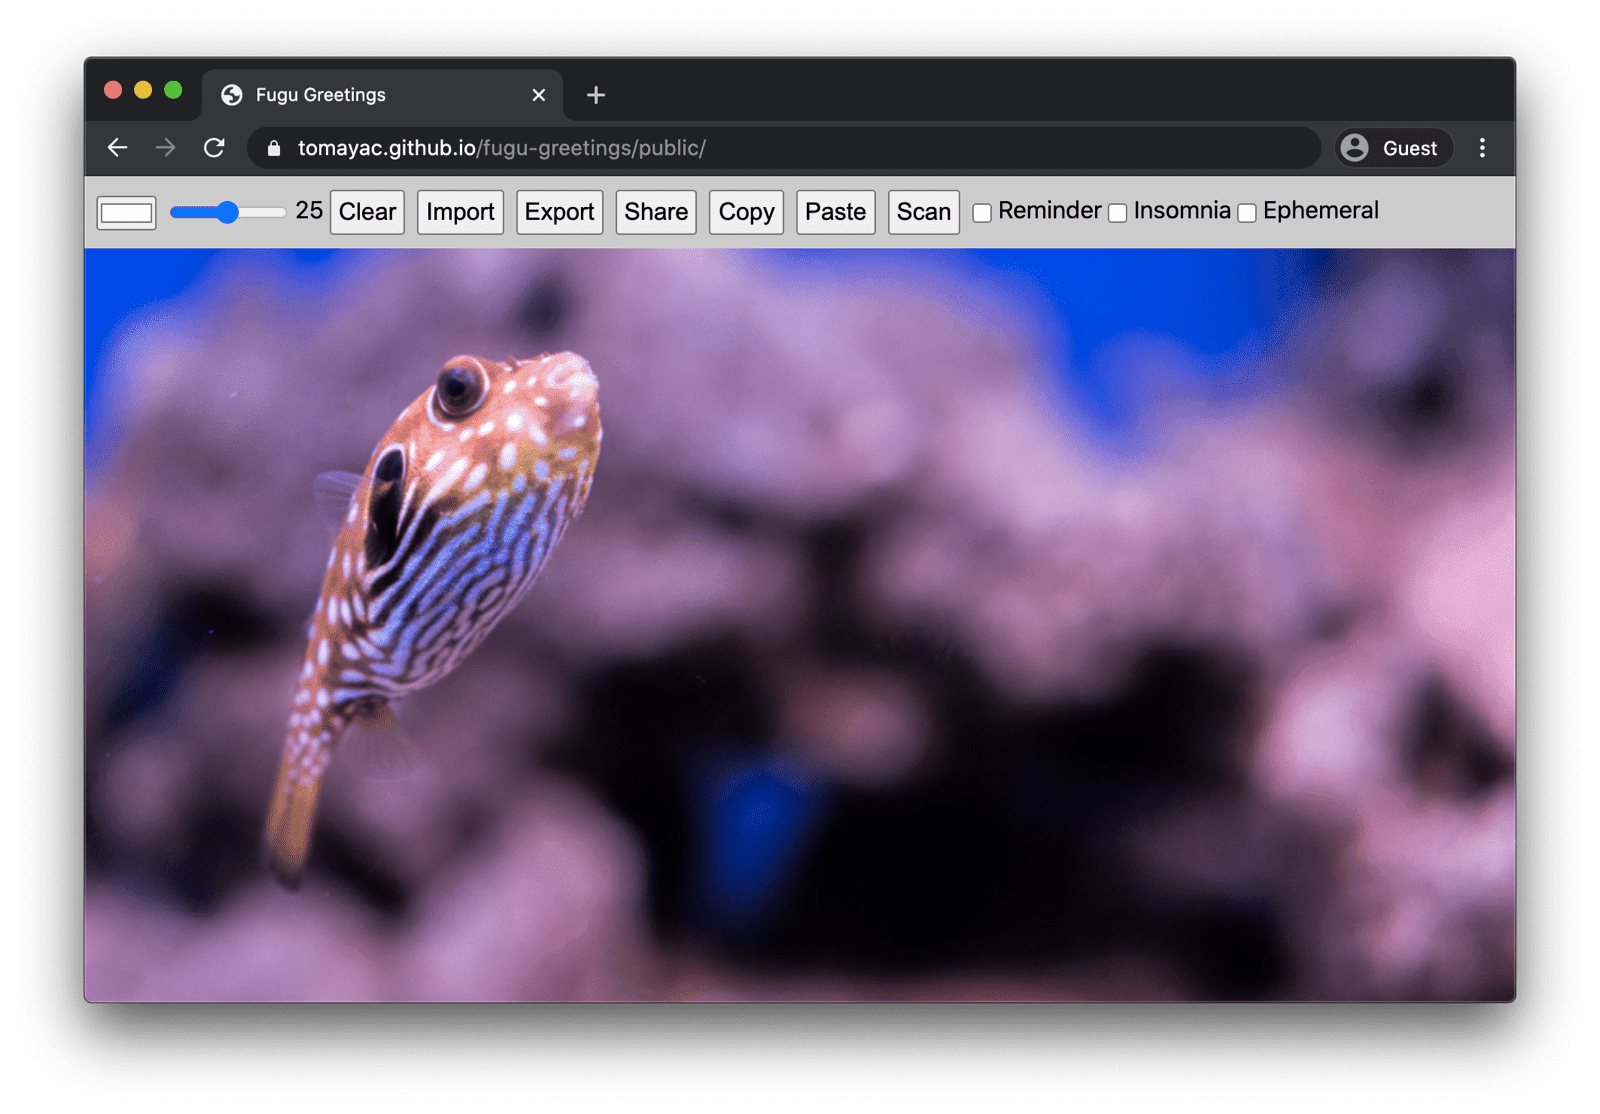 Fugu Greetings en ejecución en Chrome para escritorio, mostrando varias funciones disponibles.